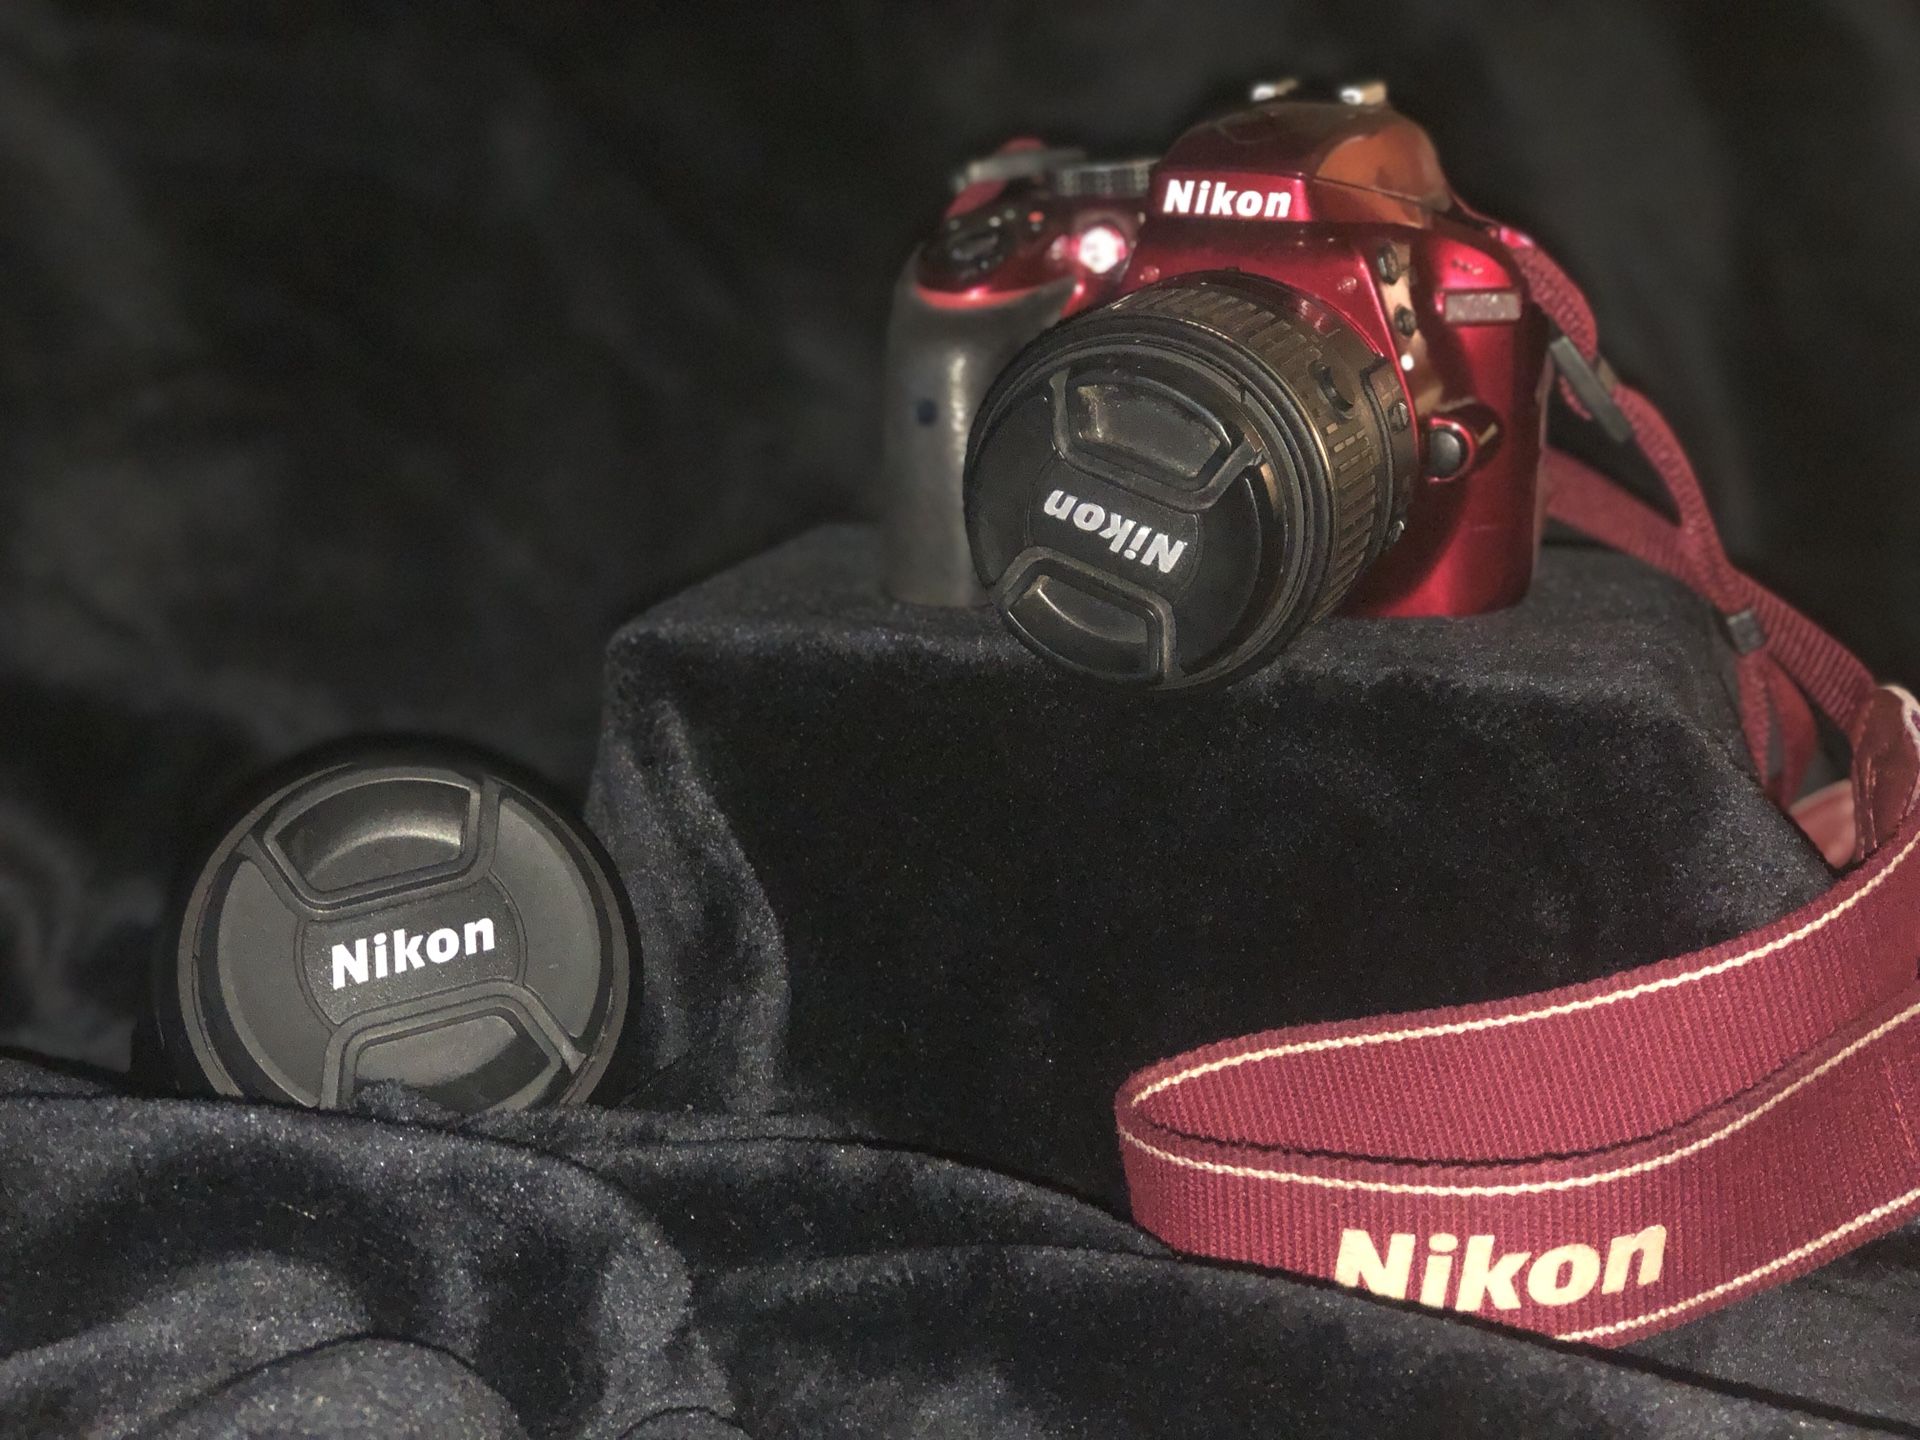 Nikon D3300 with Nikkor 70-300mm Zoom lense and Nikkor 18-55mm lense